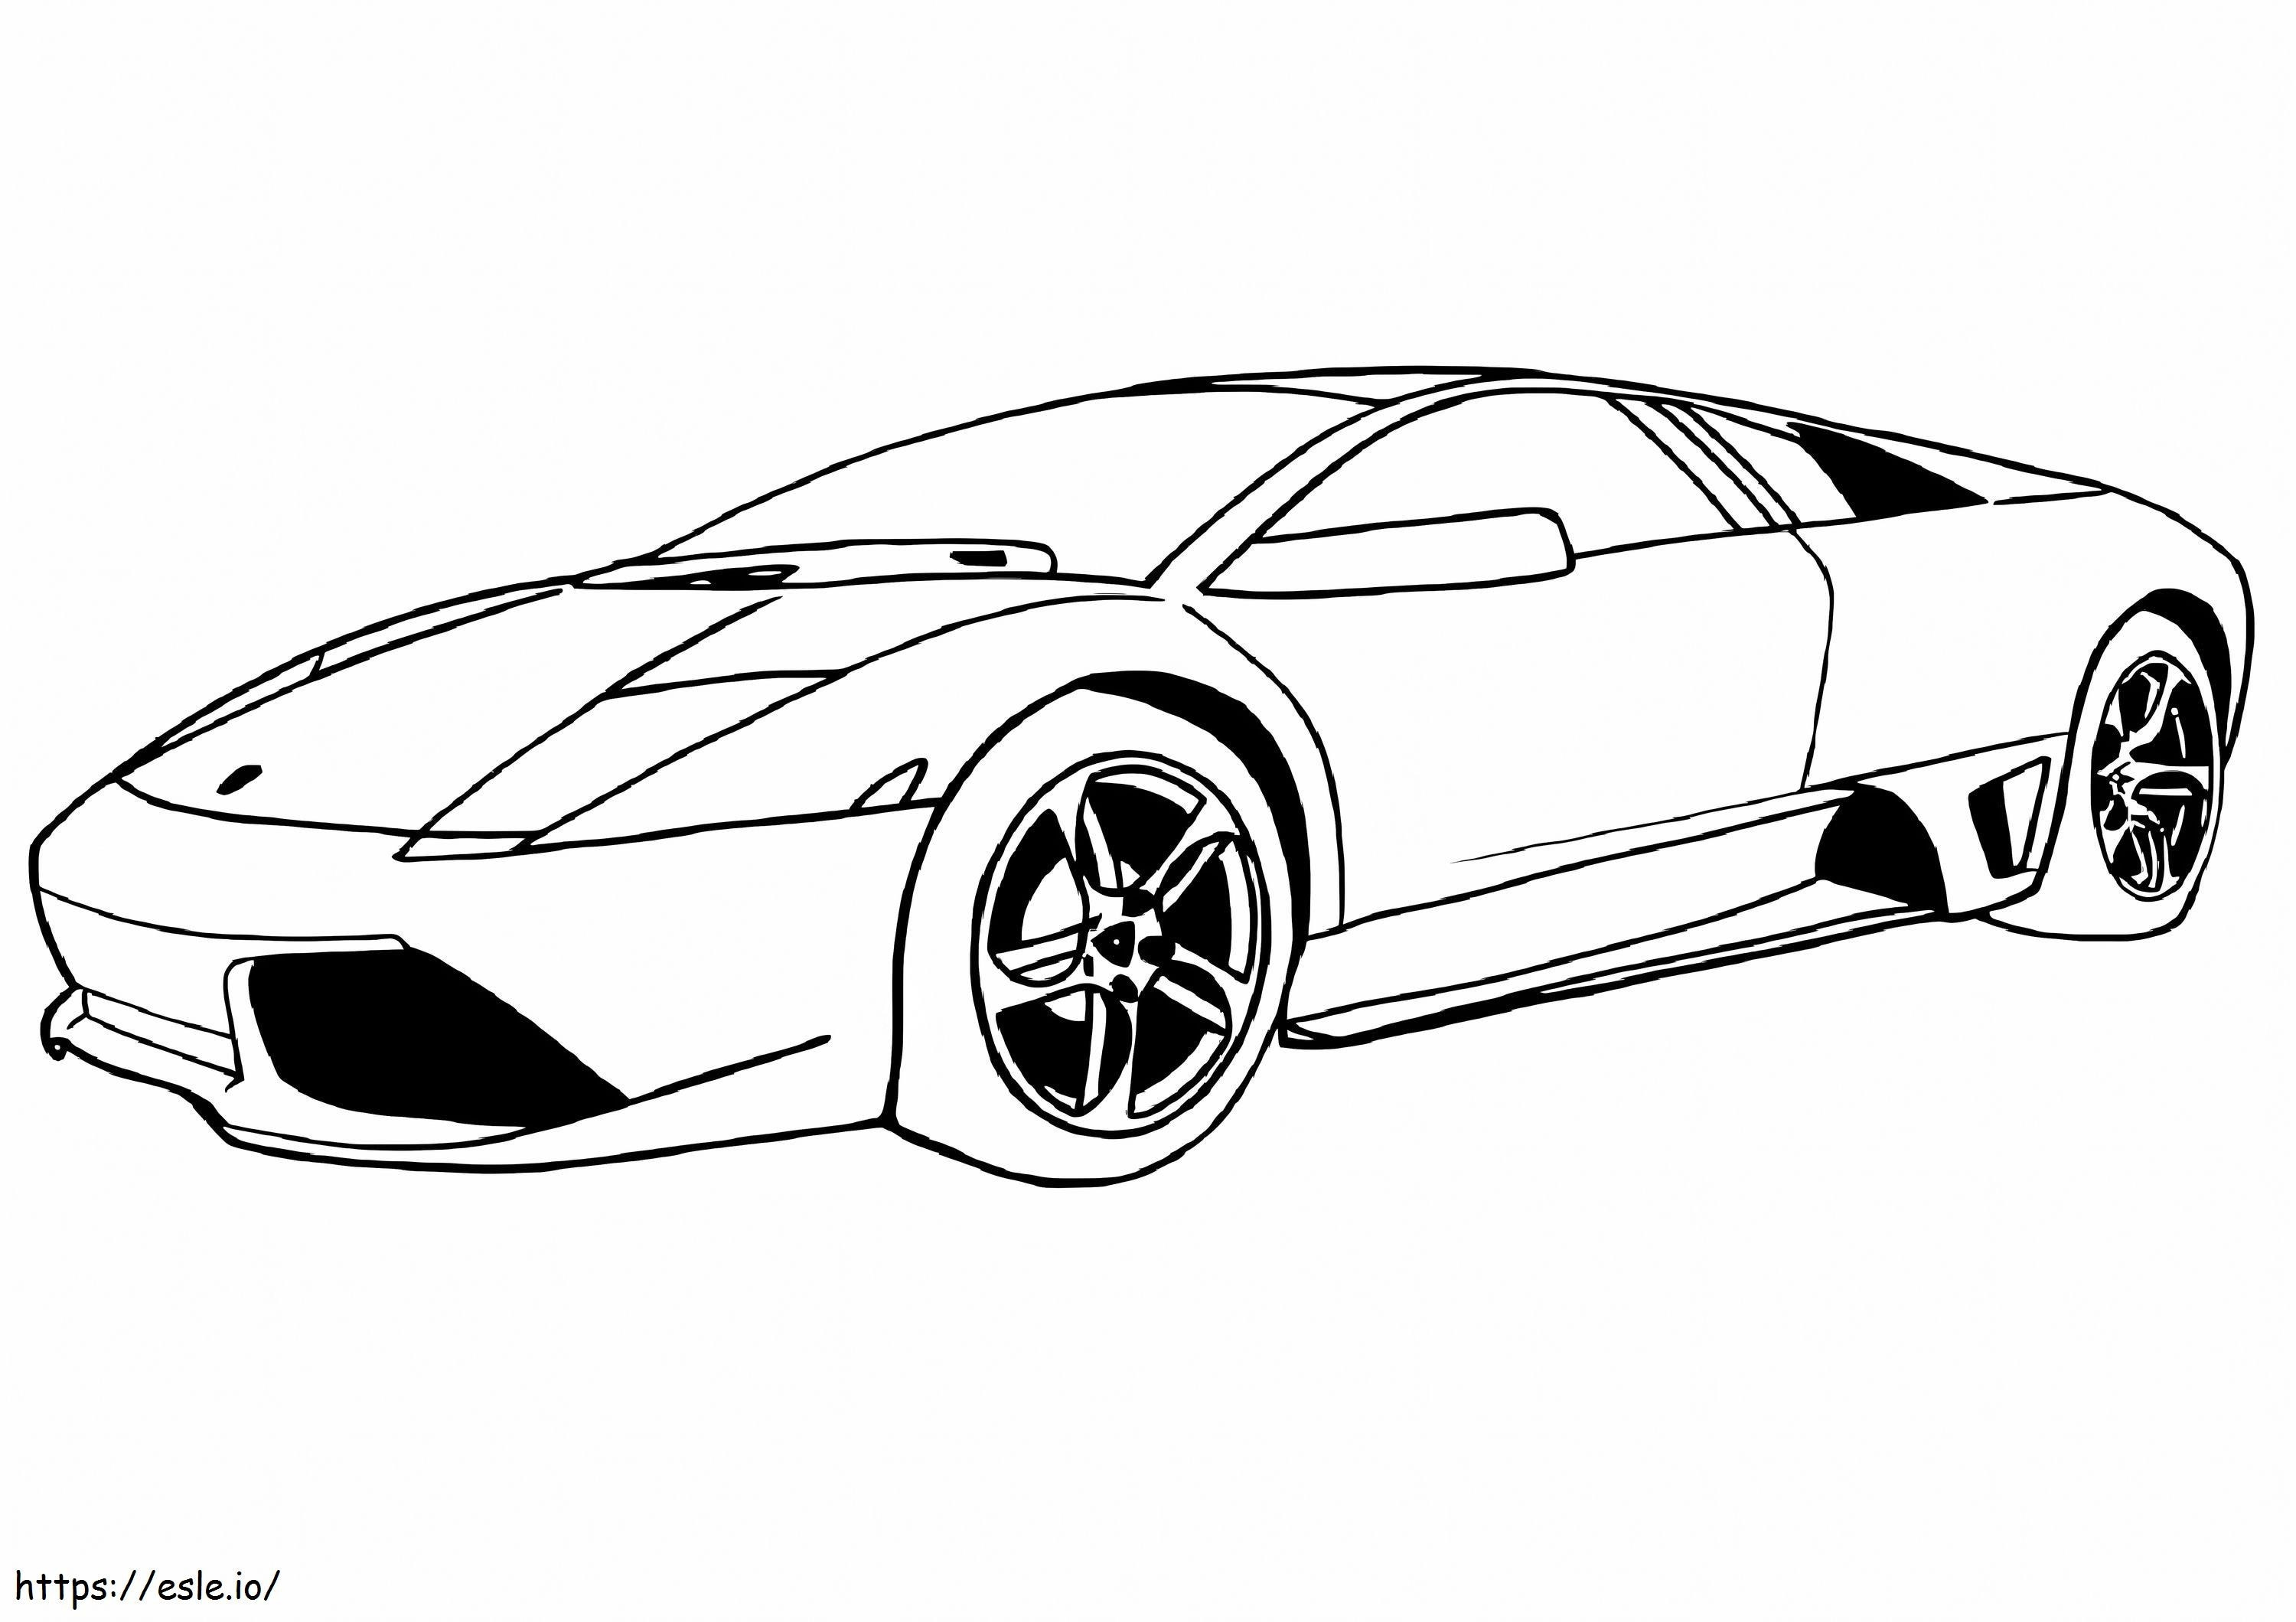 Lamborghini Murcielago coloring page